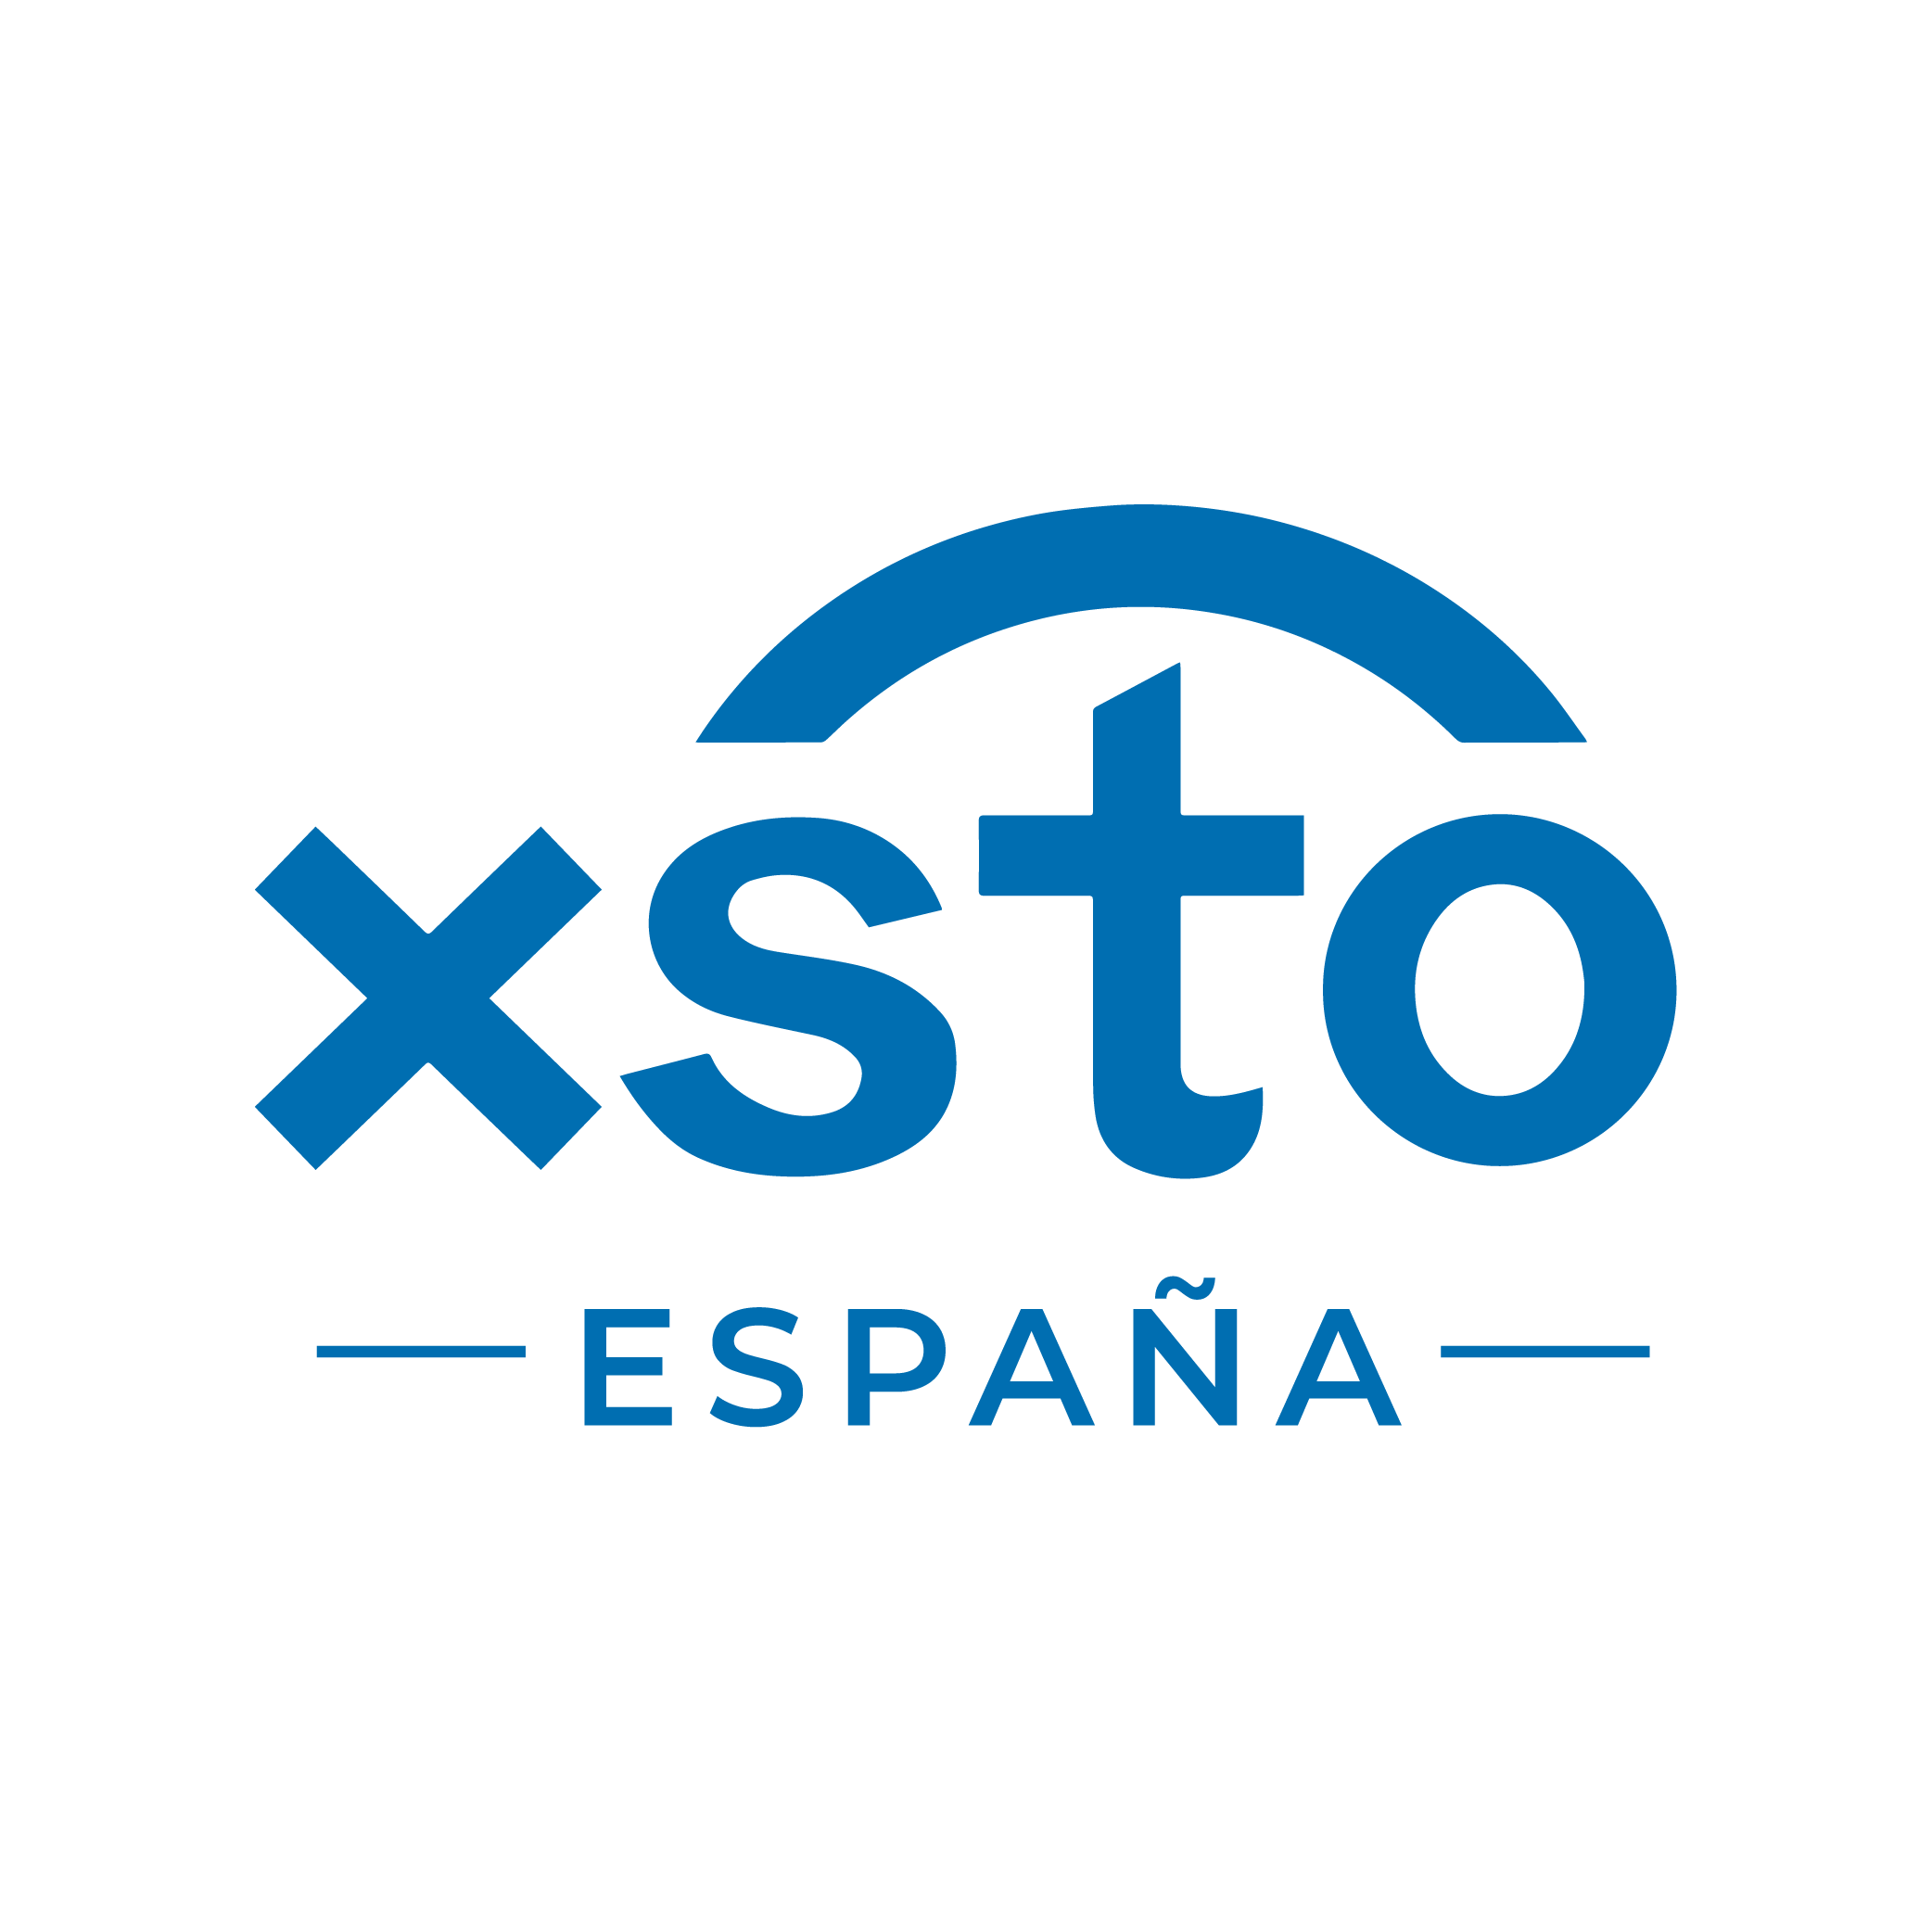 Logo XSTO España